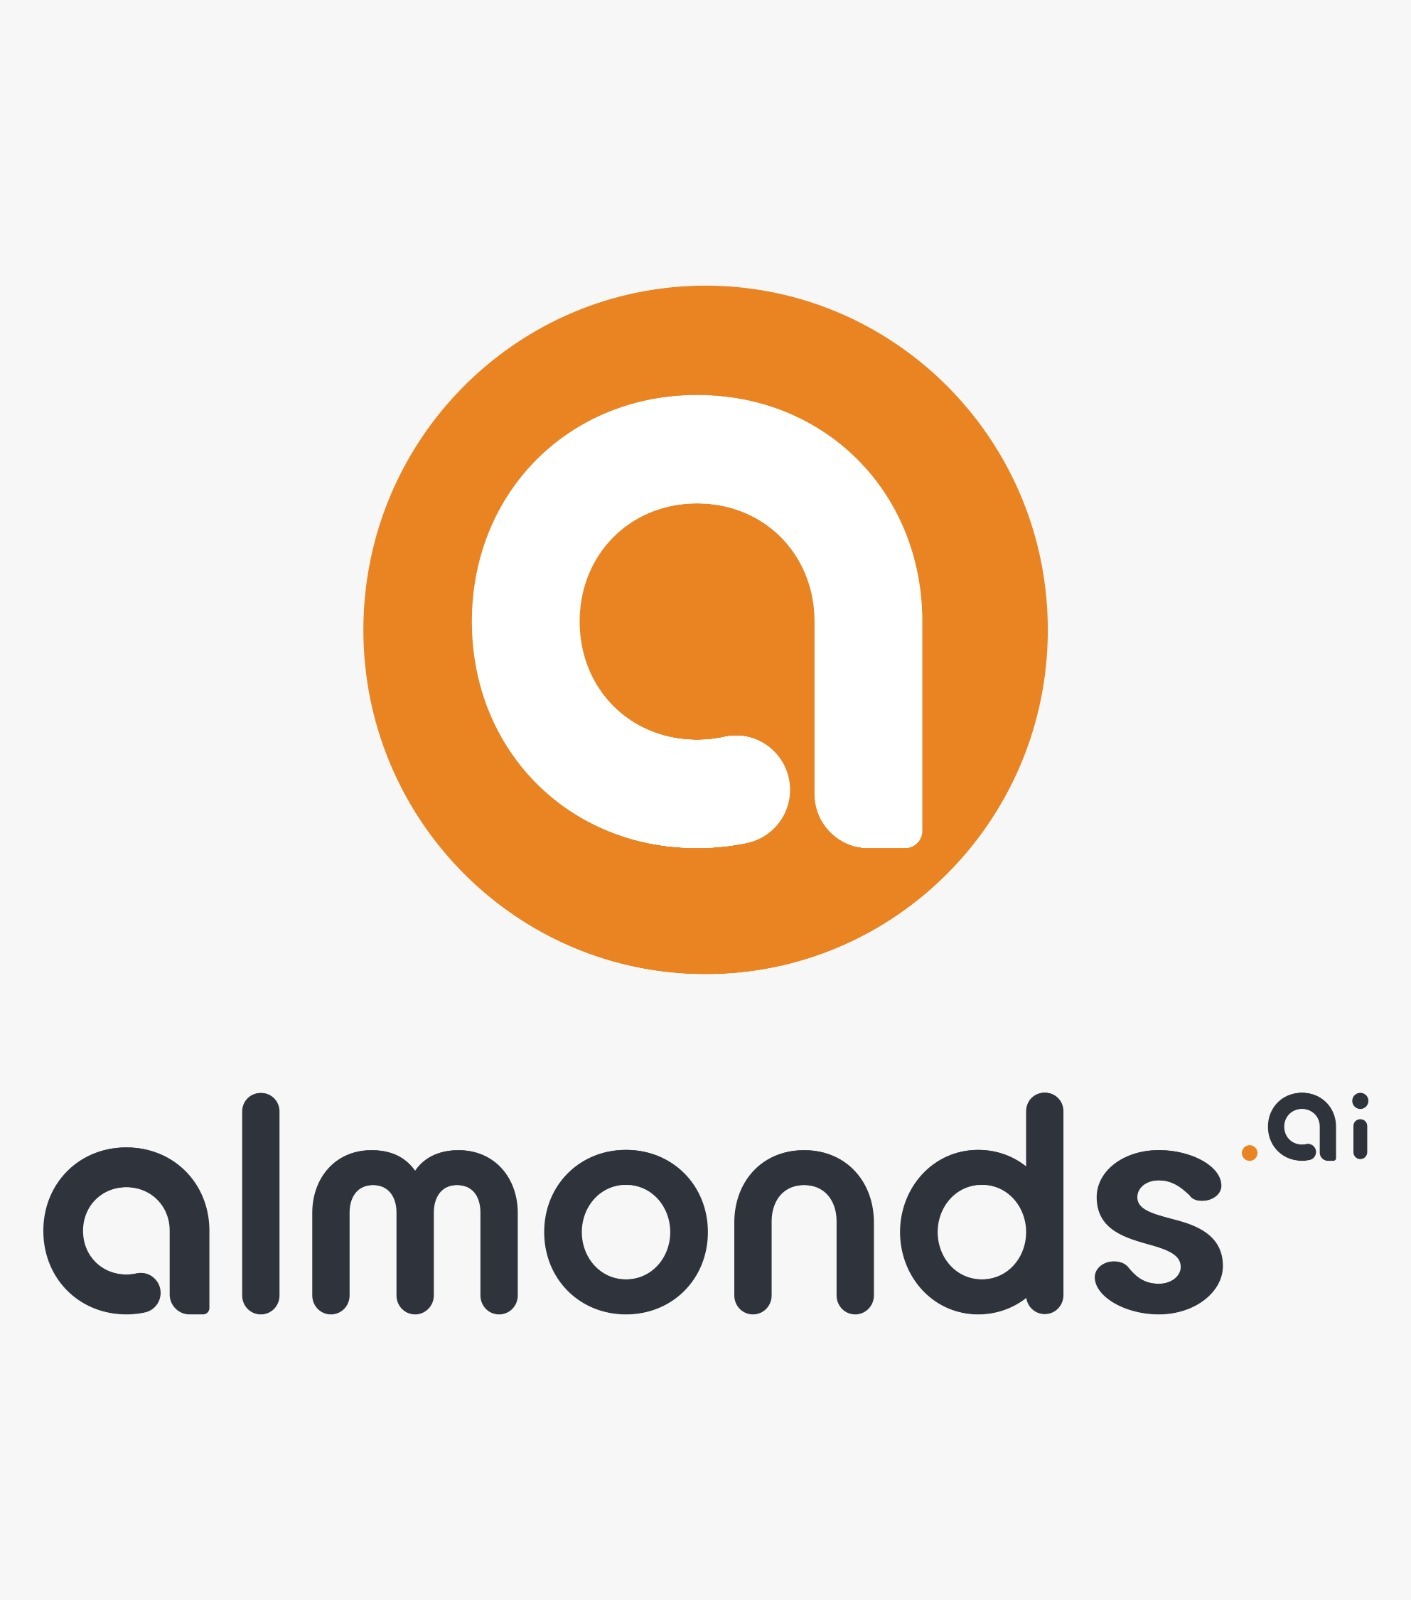 Almonds Ai Launches ChannelCARETM Program